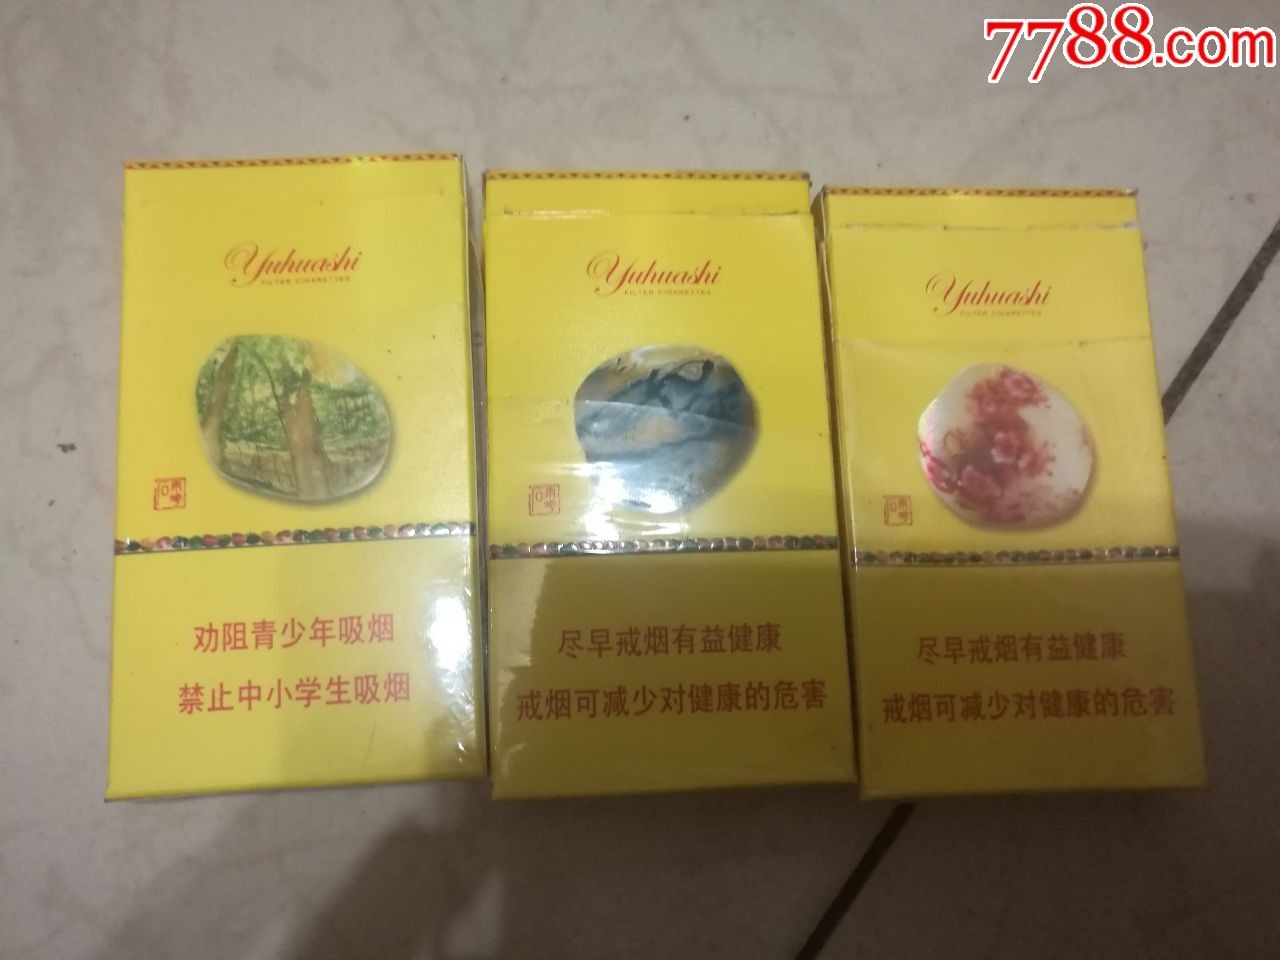 南京雨花石烟盒3种合售